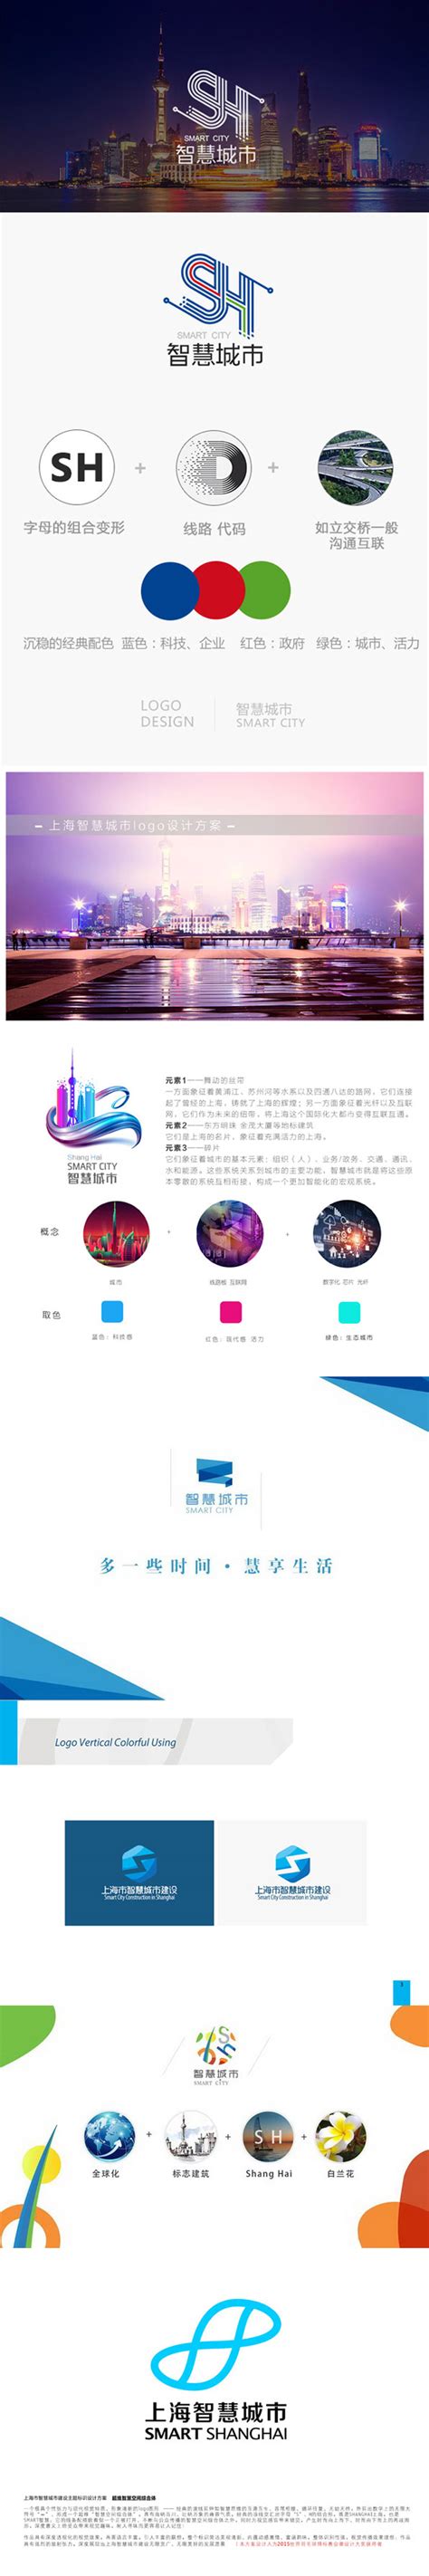 上海智慧城市发布全新品牌形象LOGO-logo11设计网